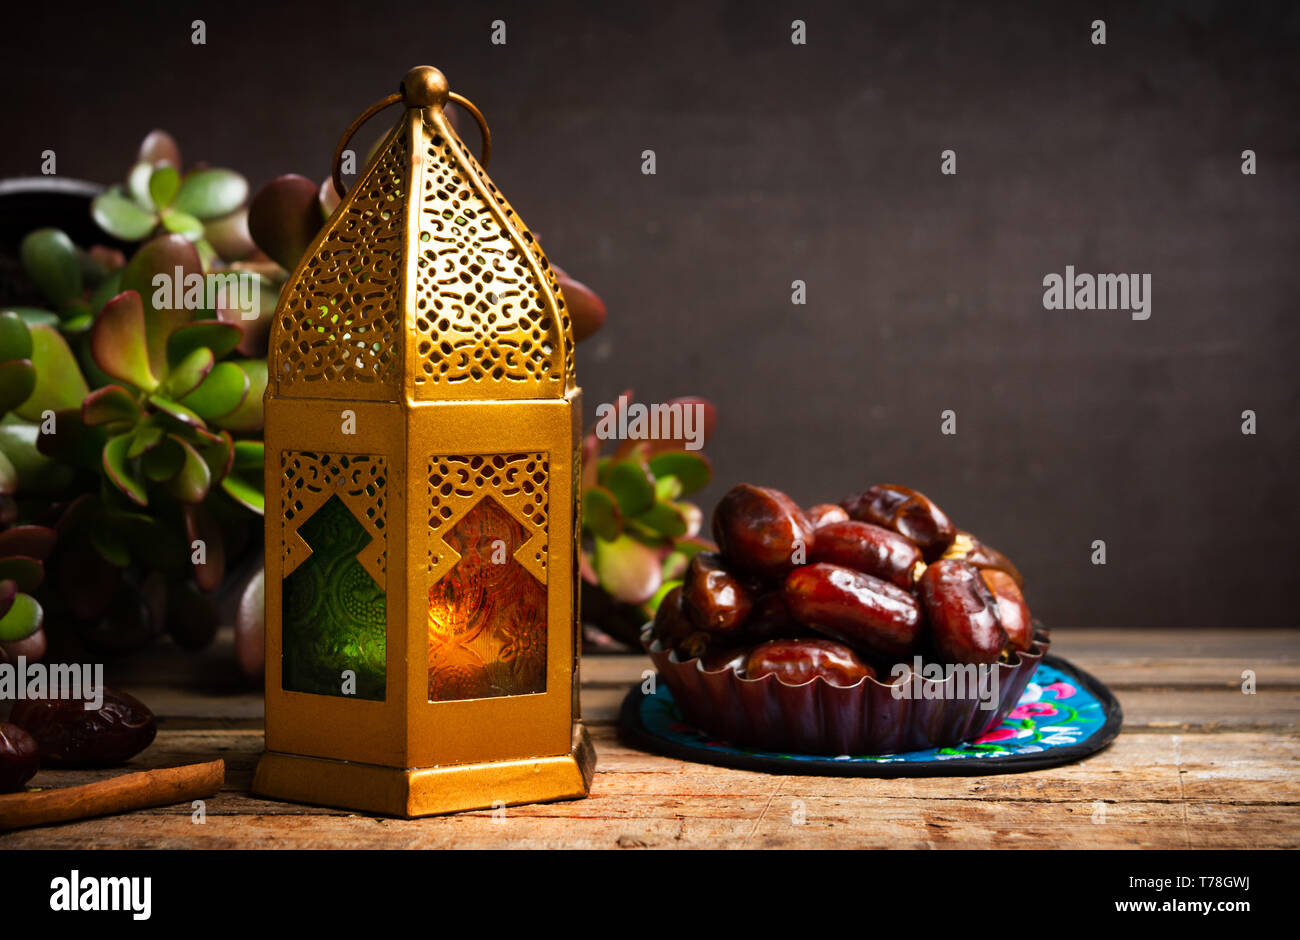 Fechas y lámparas de estilo árabe sobre una mesa con espacio de copia Foto de stock